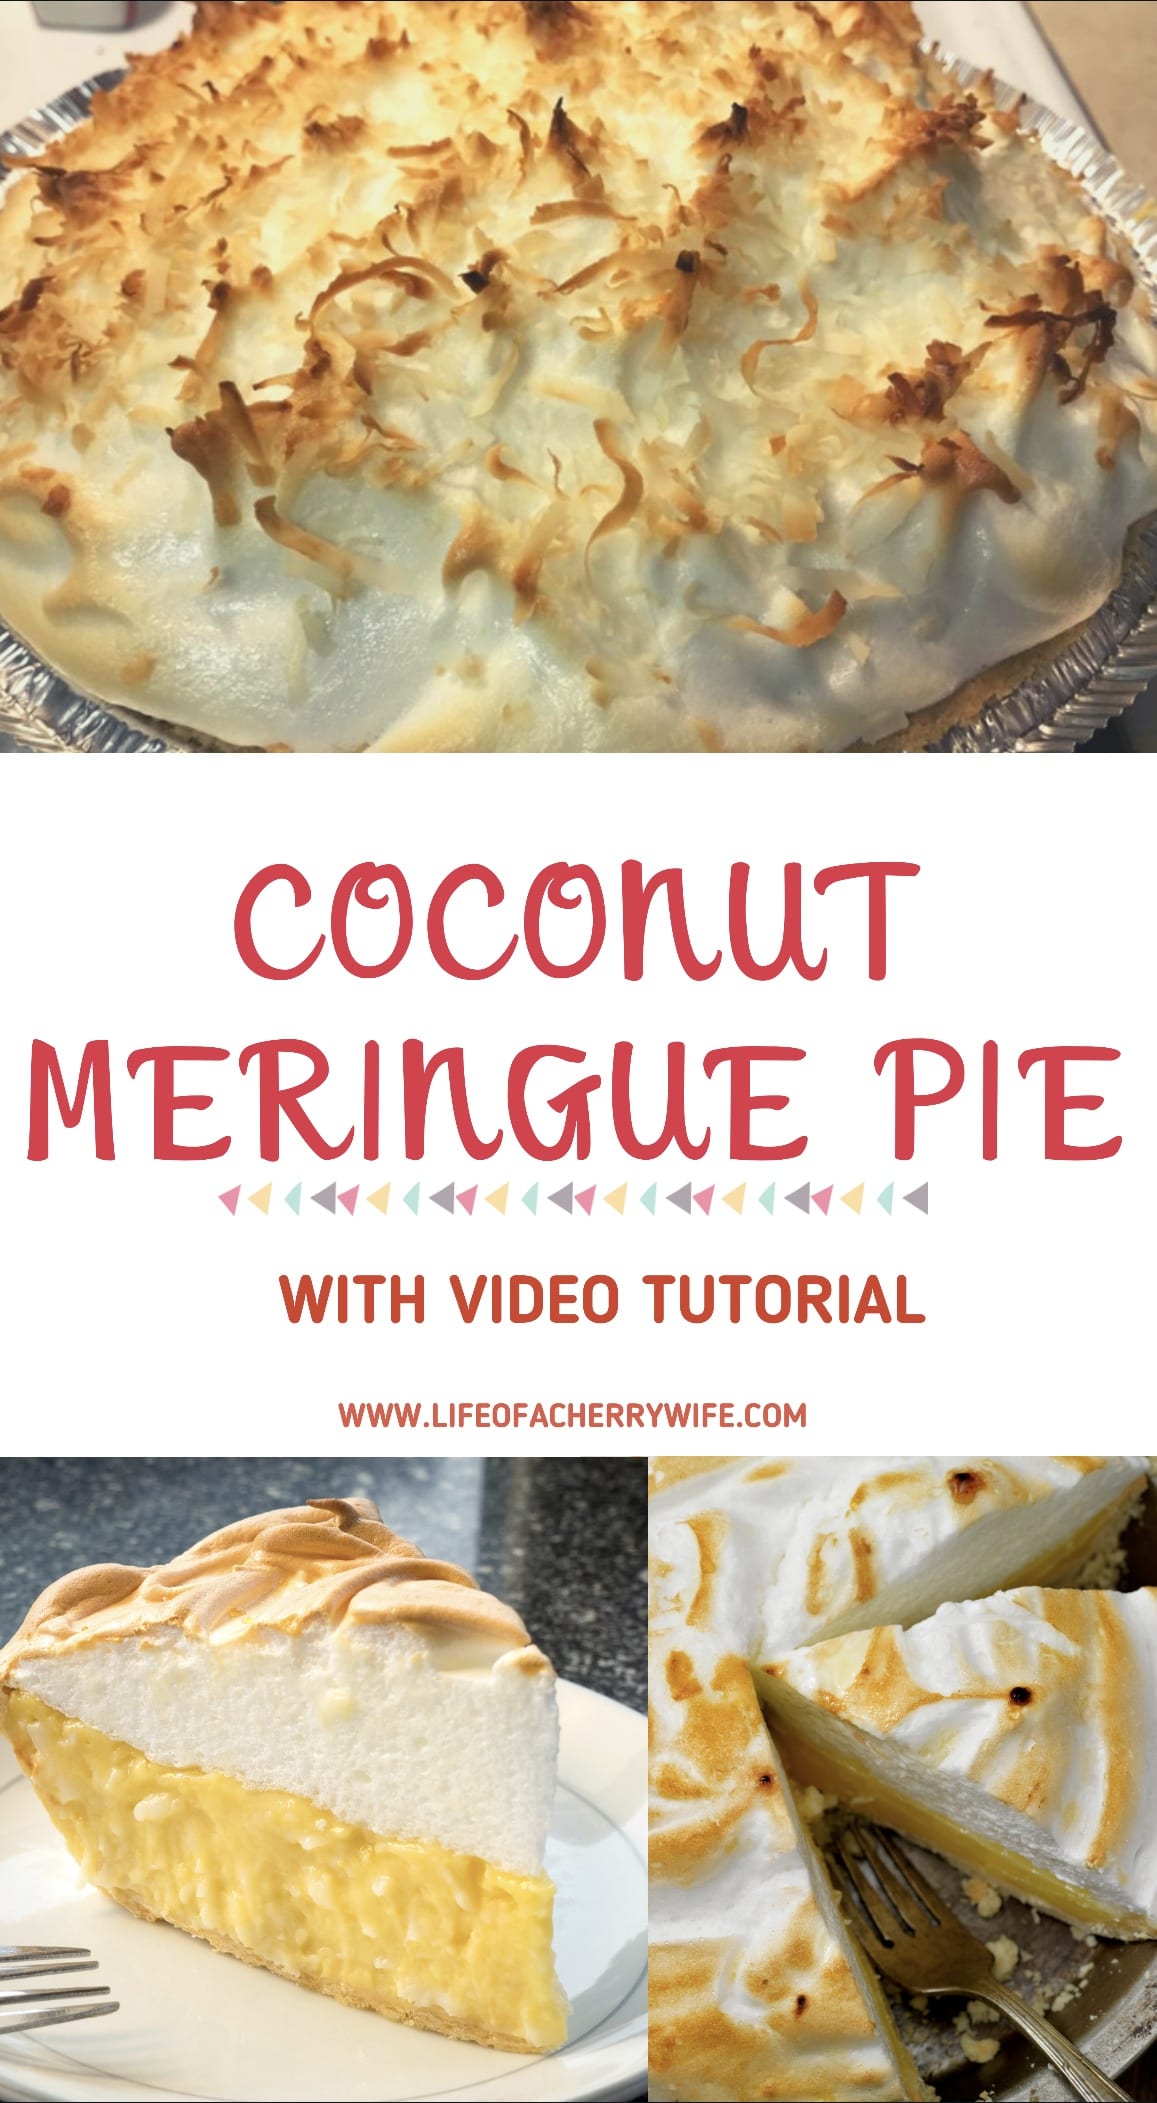 Easy Coconut Meringue Pie Recipe with Video